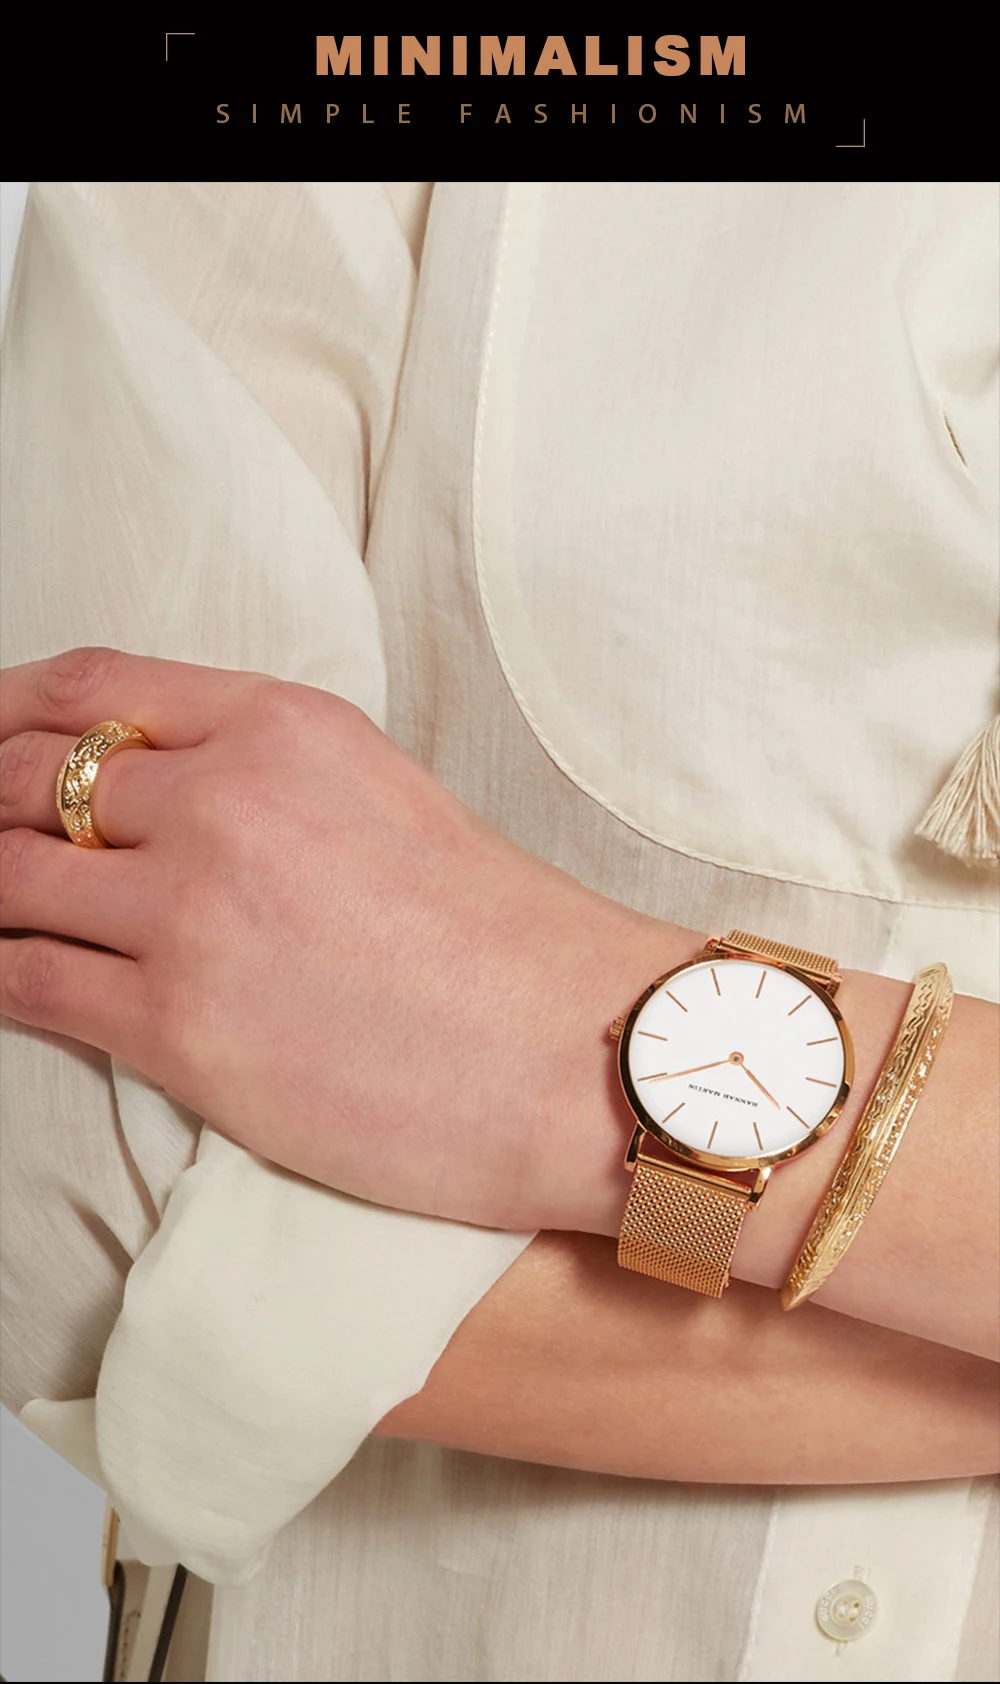 Relogio Feminino Hannah Martin, люксовый бренд, DW стиль, женские часы, нержавеющая сталь, сетка, розовое золото, водонепроницаемые женские кварцевые часы